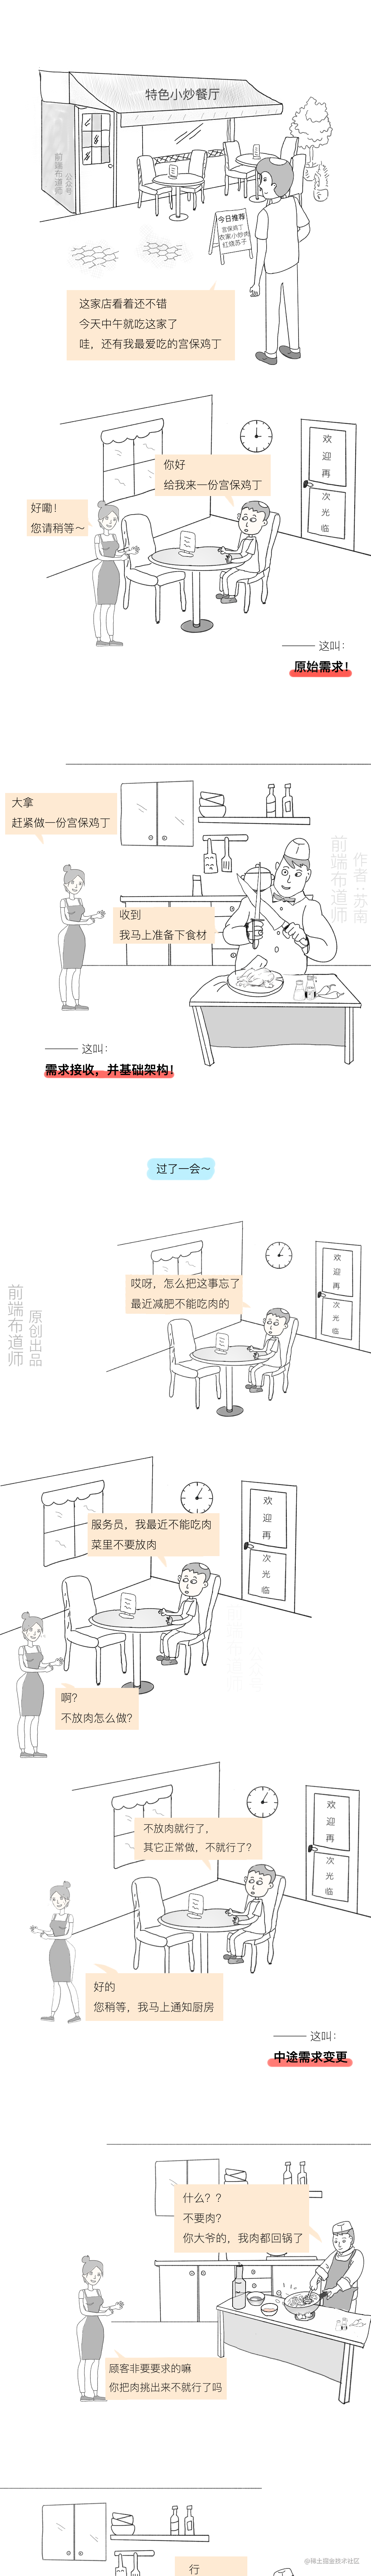 前端布道师-苏南 漫画